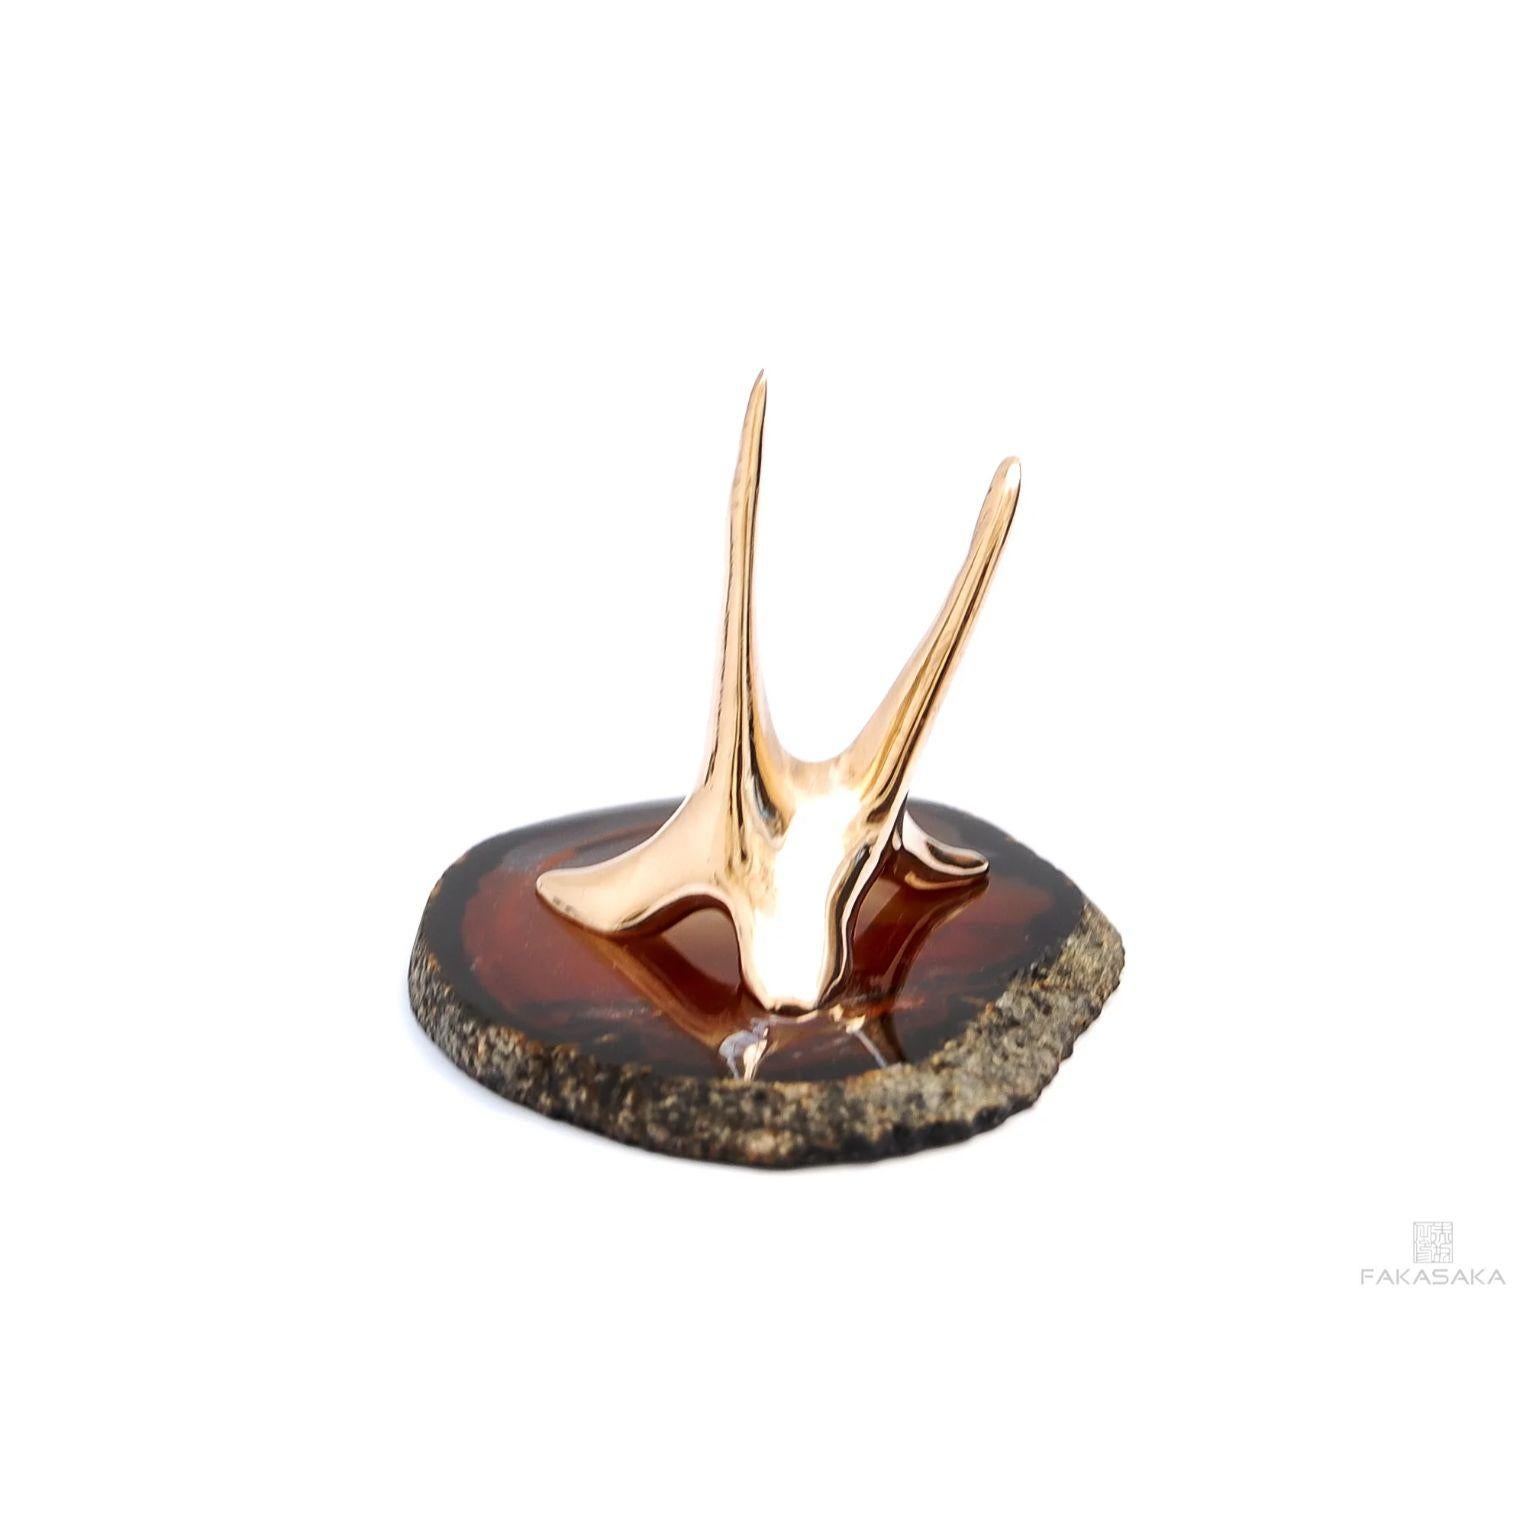 Brazilian Horn 1 Sculpture by Fakasaka Design For Sale